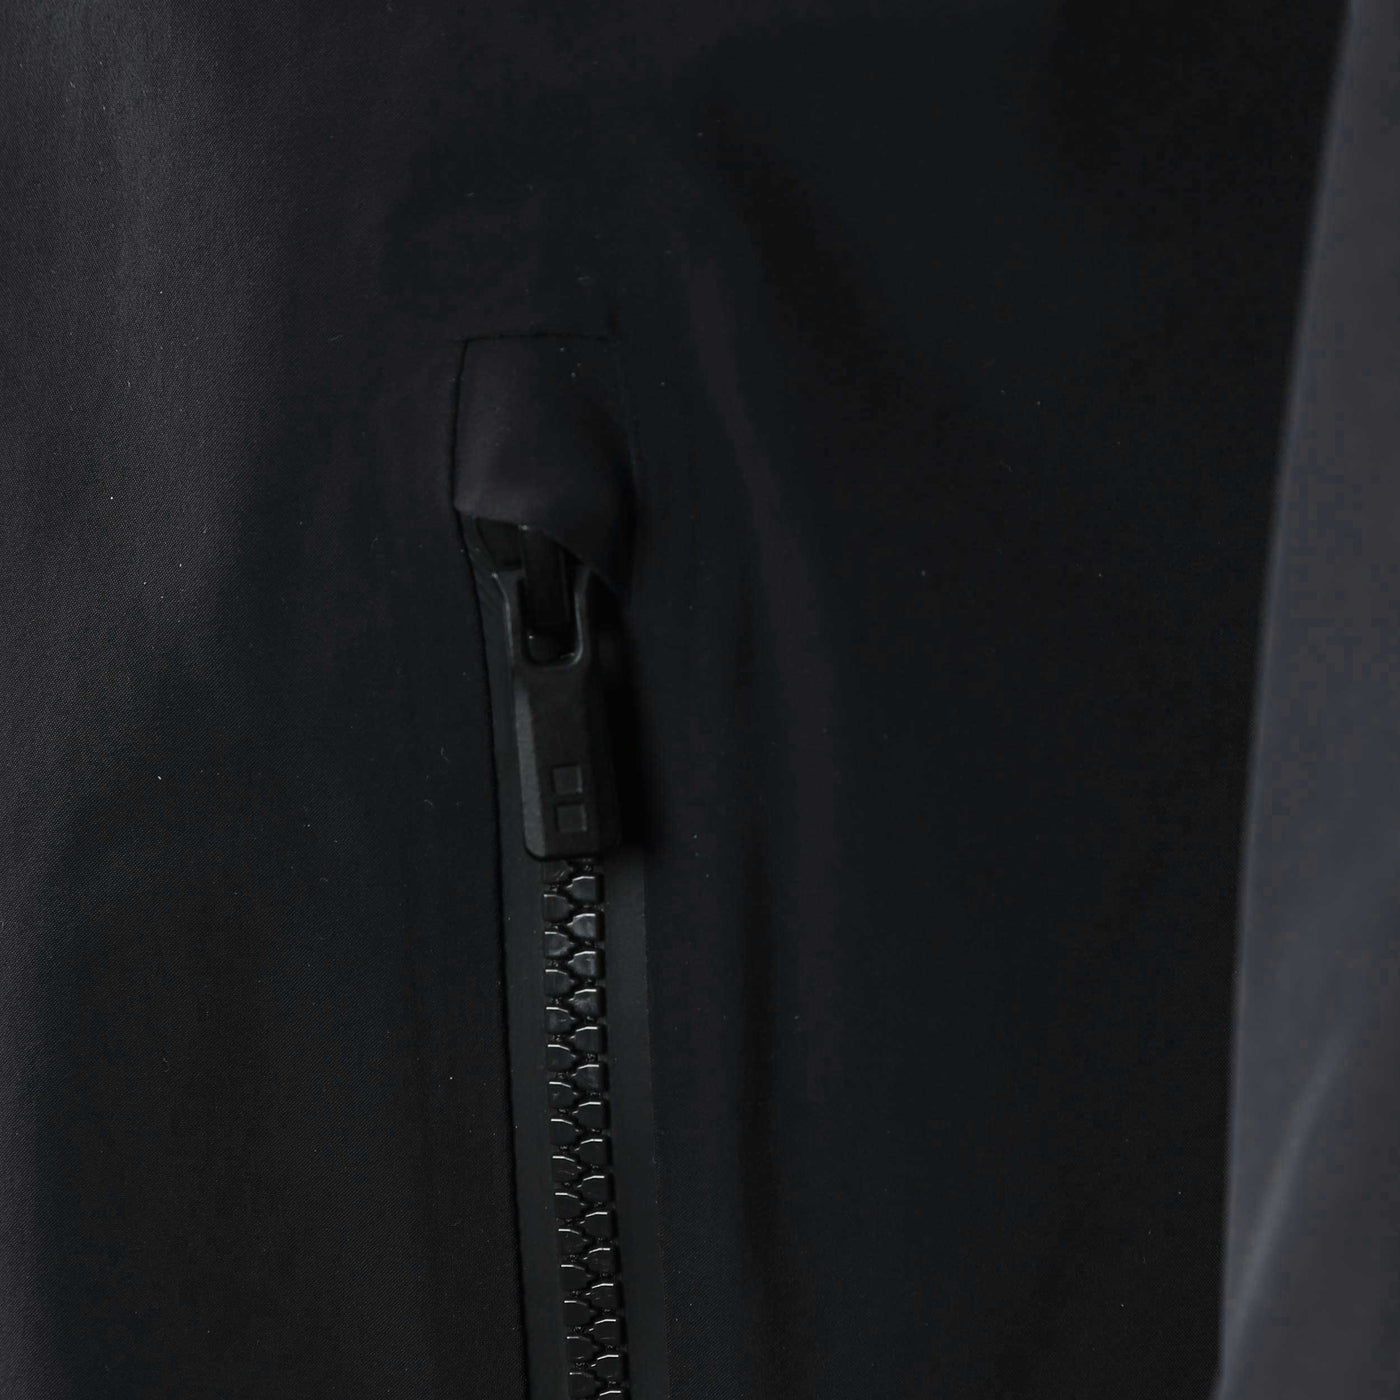 UBR Regulator Coat in Black Pocket Zip